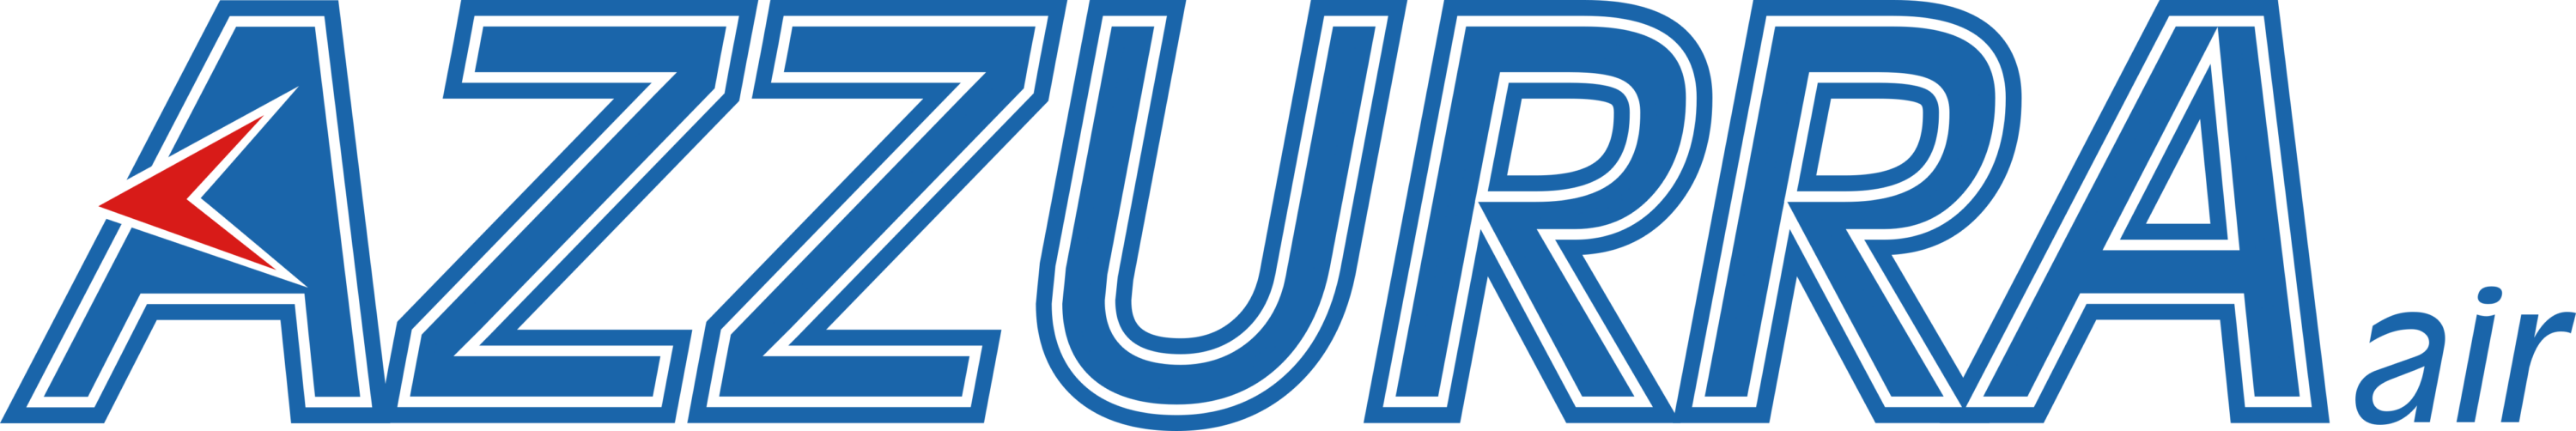 Azzurra Air Logo